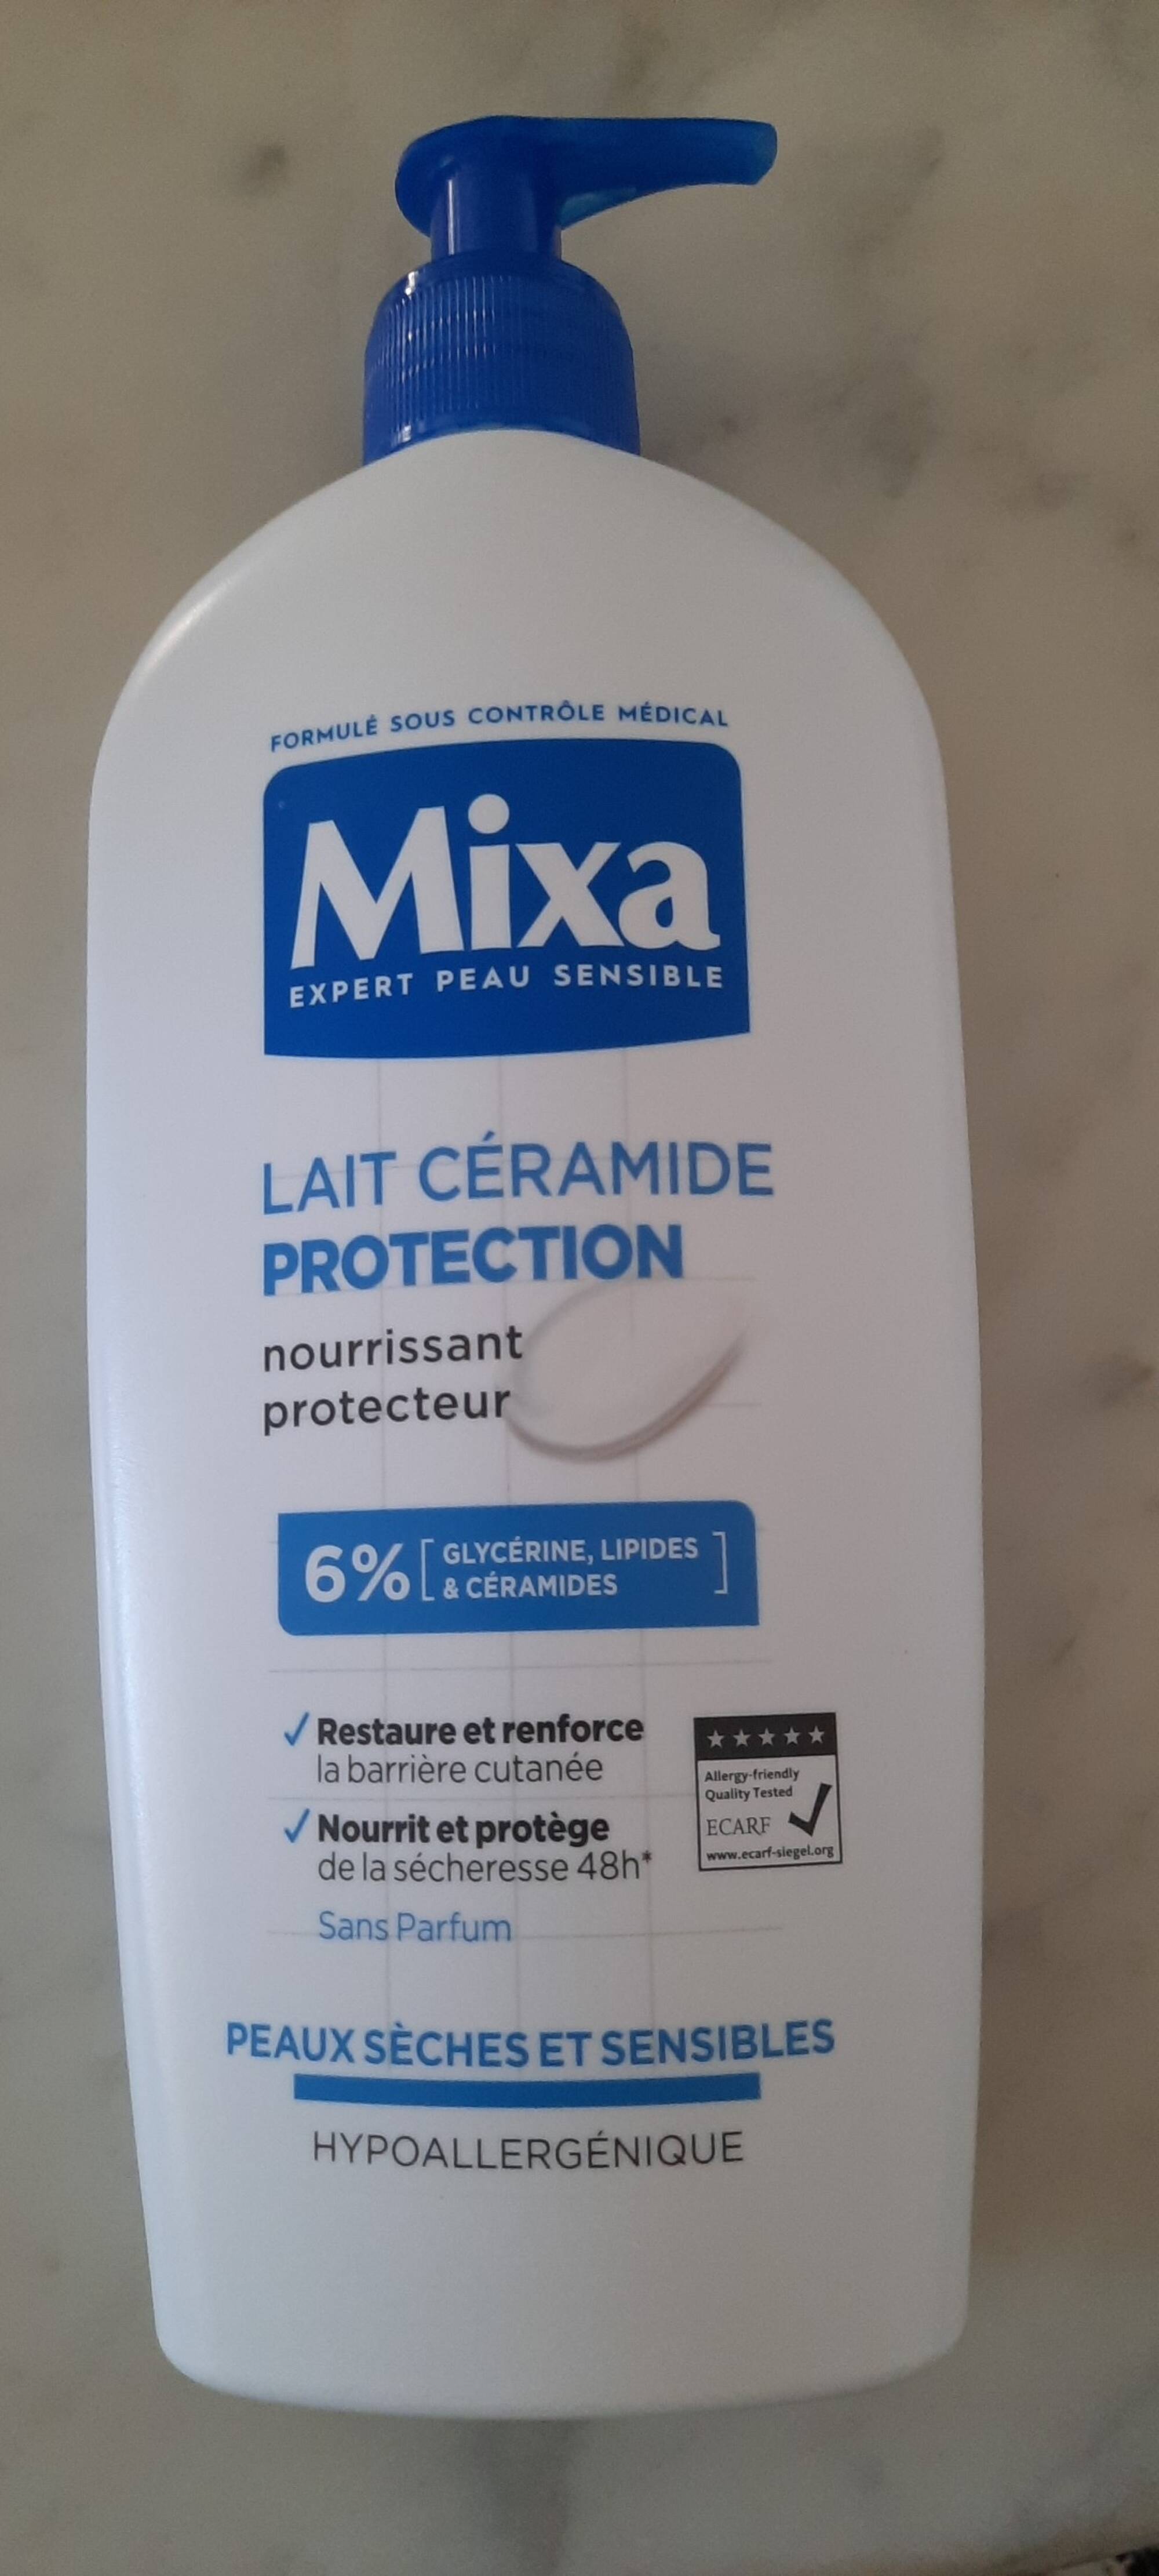 MIXA - Protection - Lait céramide